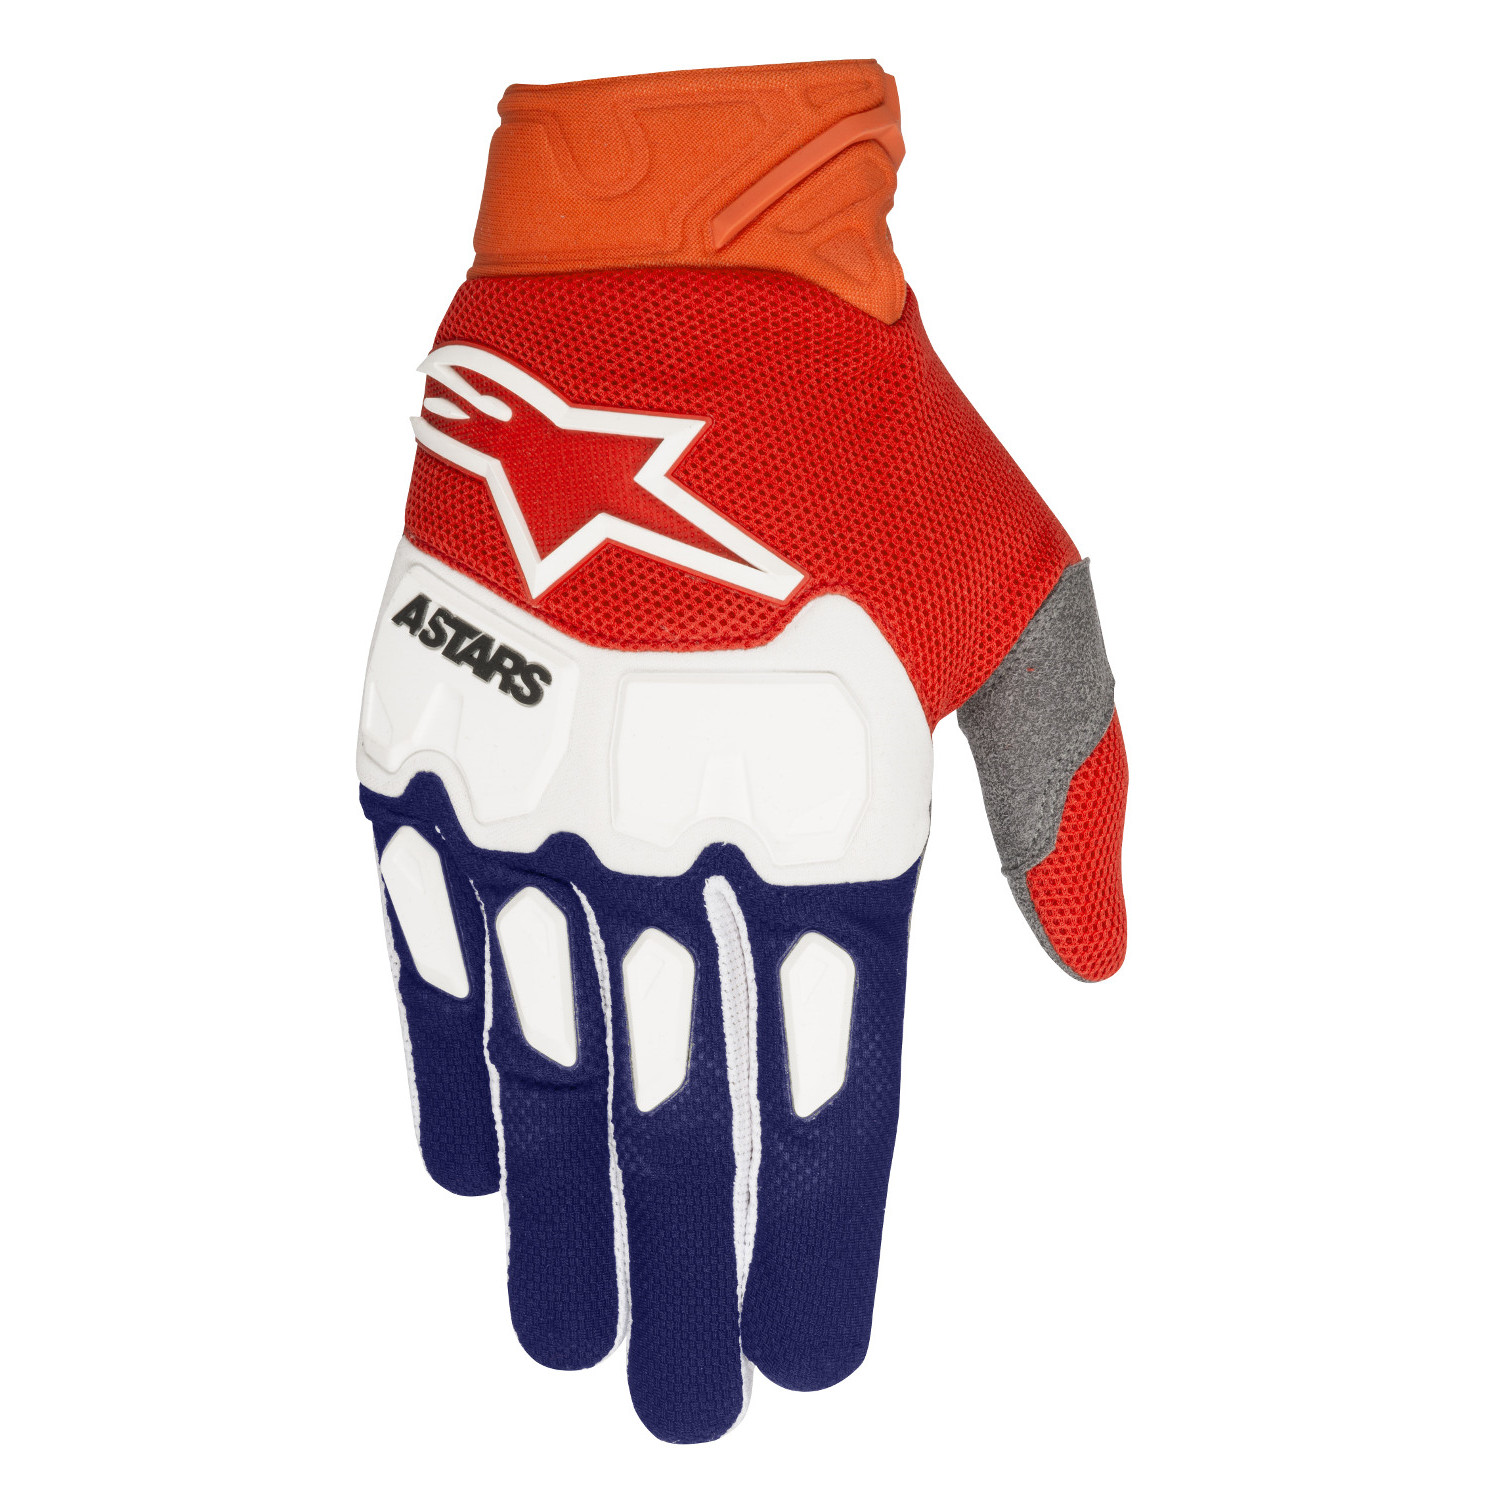 Alpinestars Gloves Racefend Dark Blue/Orange Fluo/White